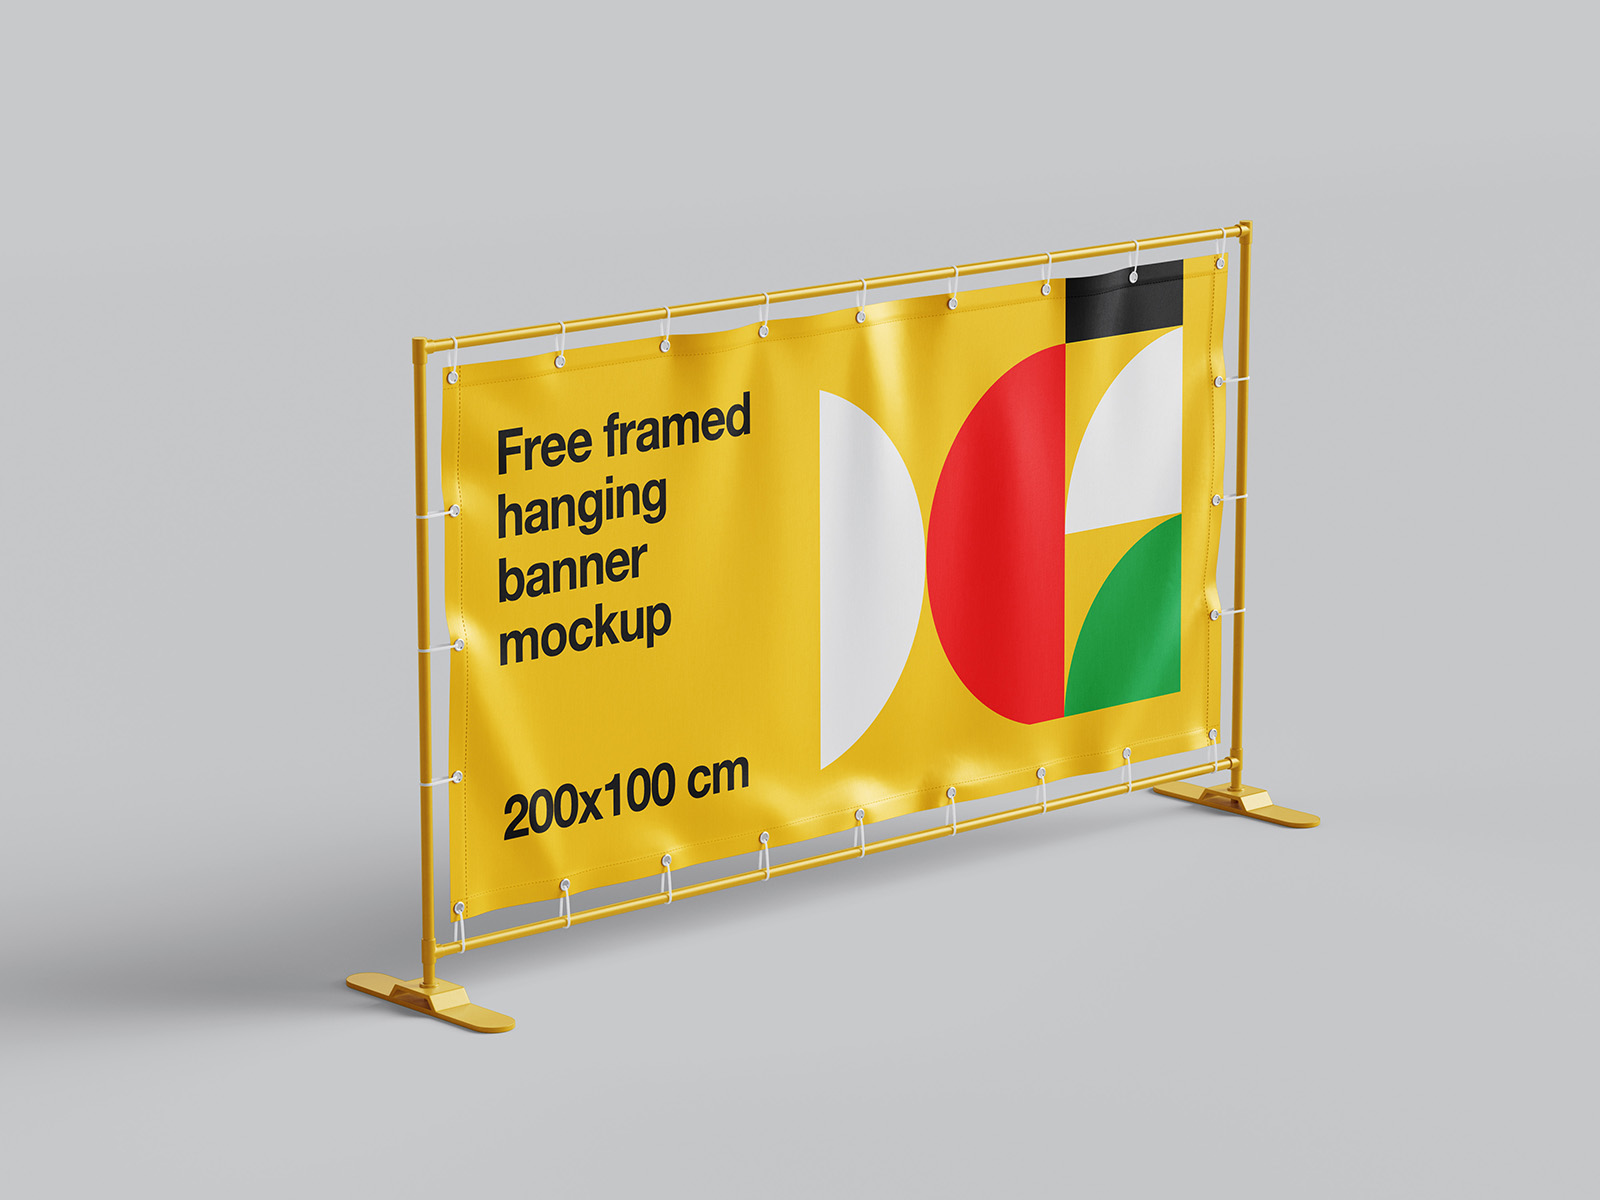 Framed hanging banner mockup